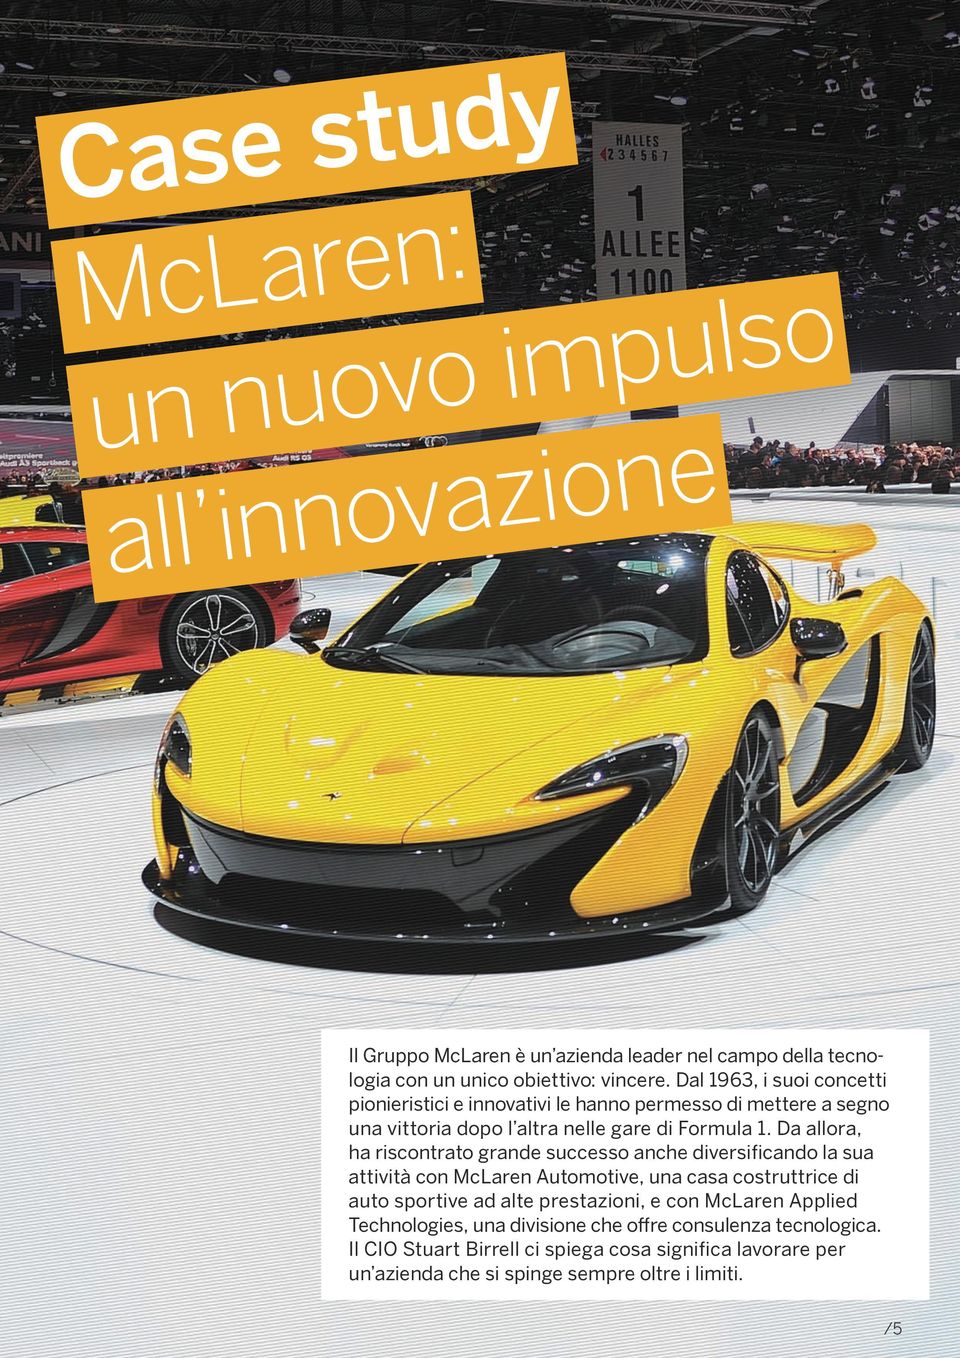 Da allora, ha riscontrato grande successo anche diversificando la sua attività con McLaren Automotive, una casa costruttrice di auto sportive ad alte prestazioni,